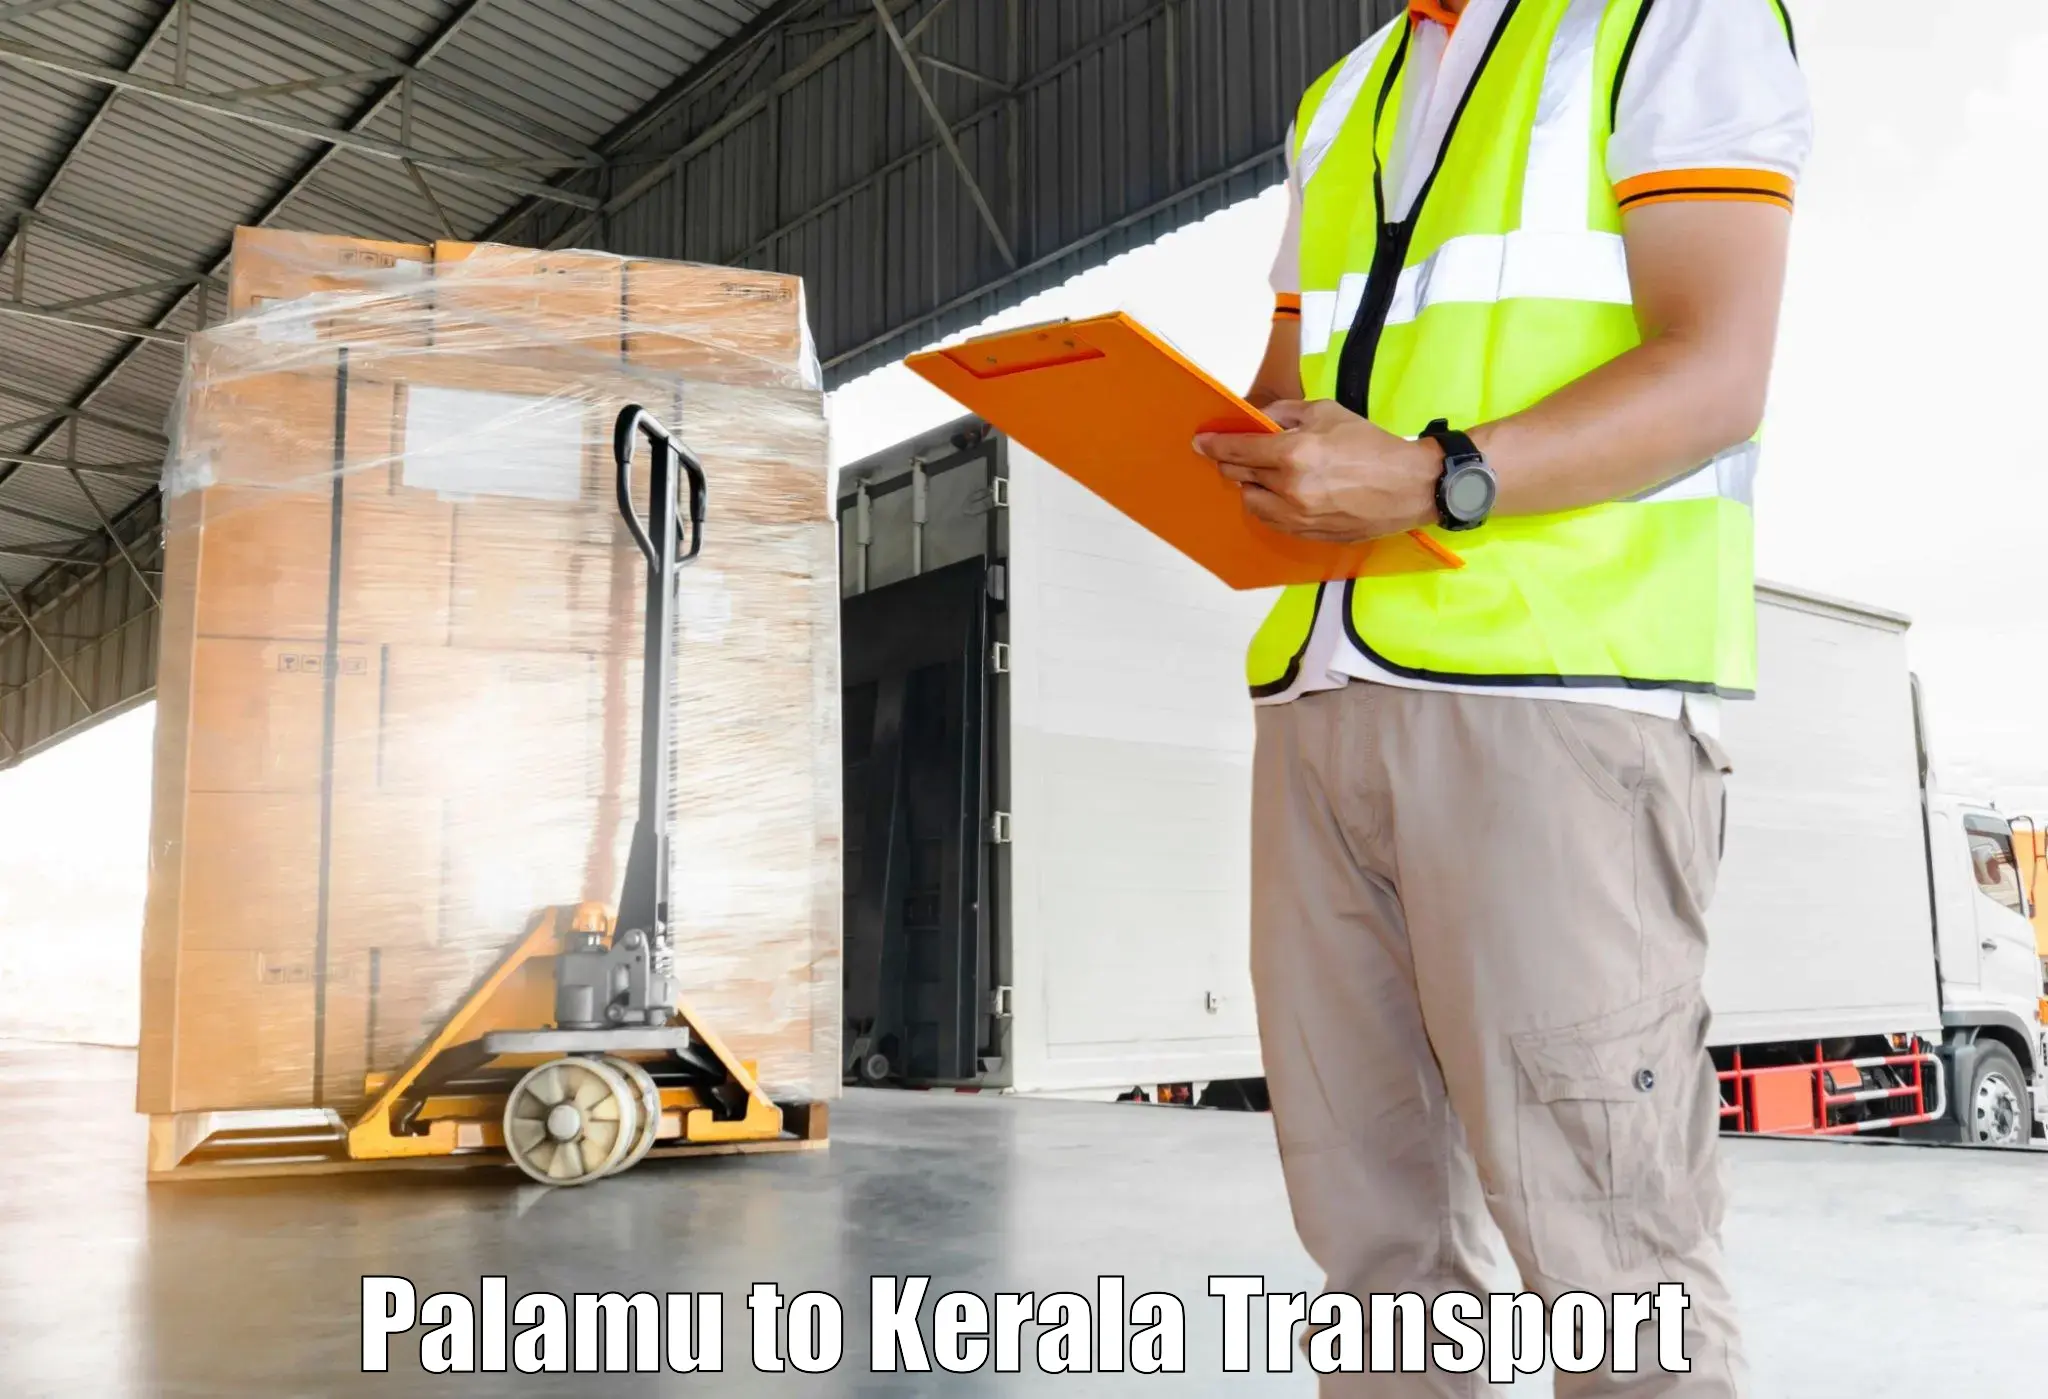 Transport shared services Palamu to Thiruvananthapuram